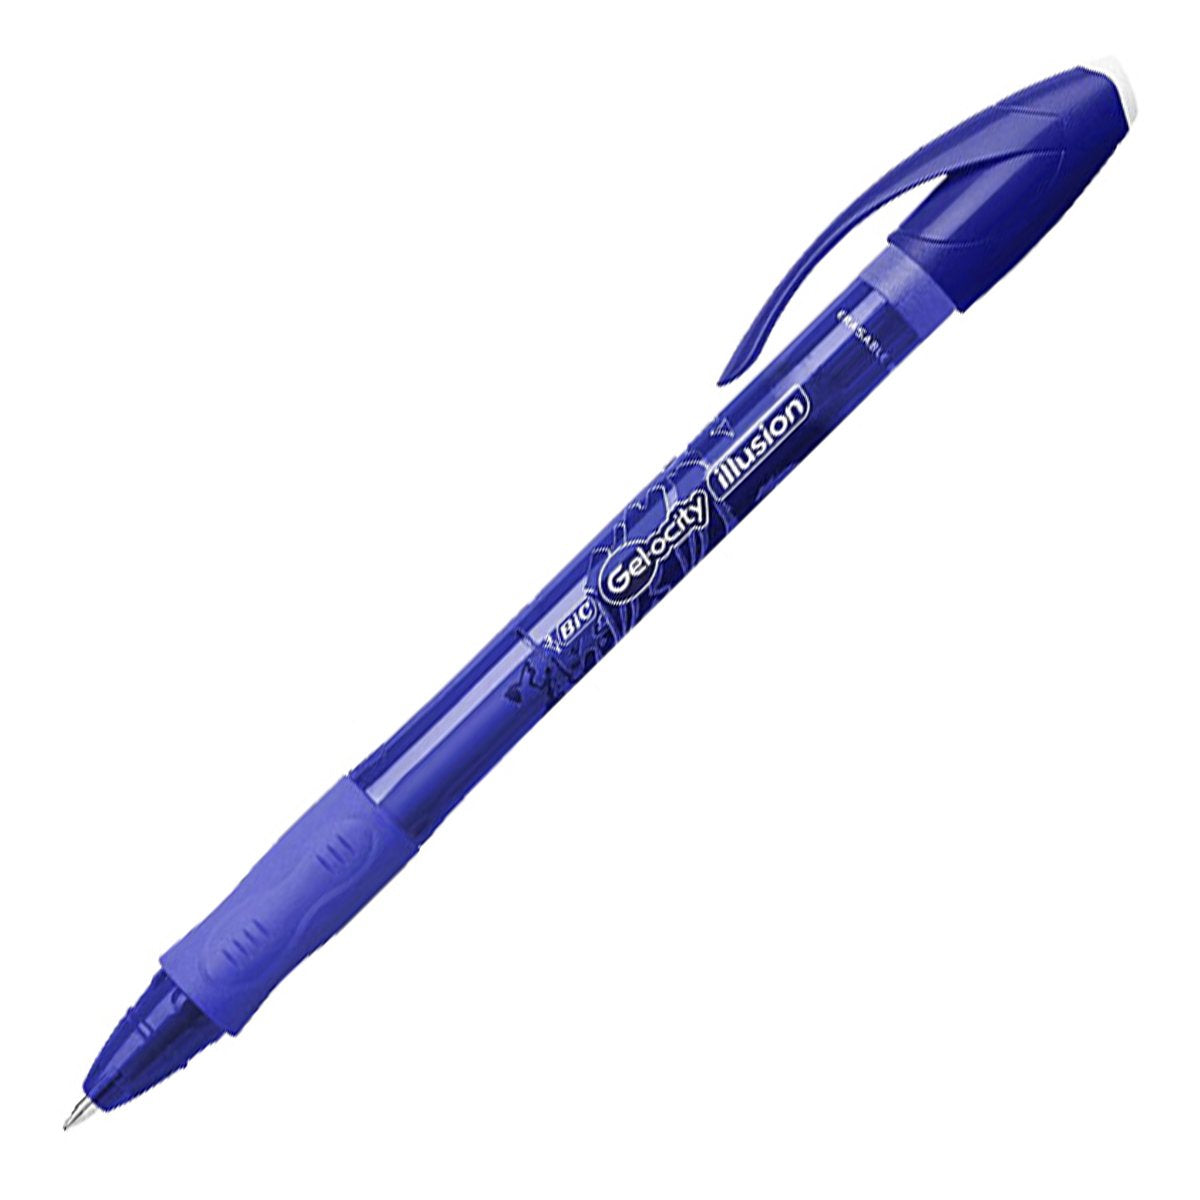 BIC Gel-ocity Illusion - Bolígrafo Borrable y Recargable de 0.7mm con Grip. Tinta del Gel. Azul